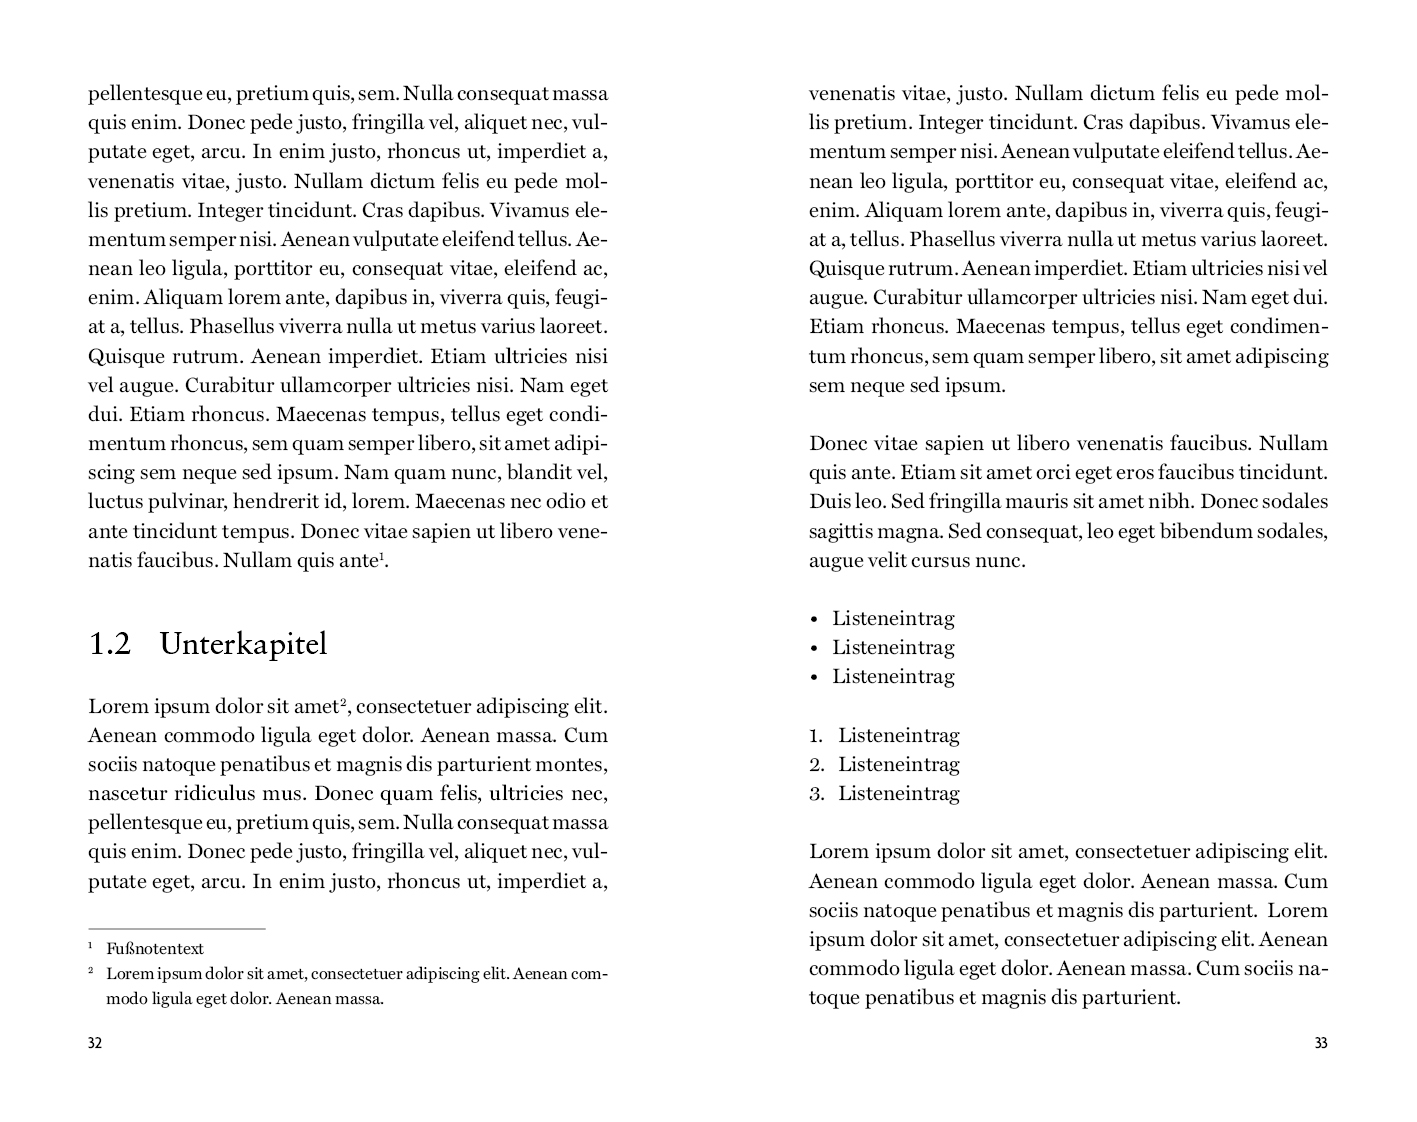 Beispiel Unterkapitel Design Sachbuch akademisch Variante Historisch